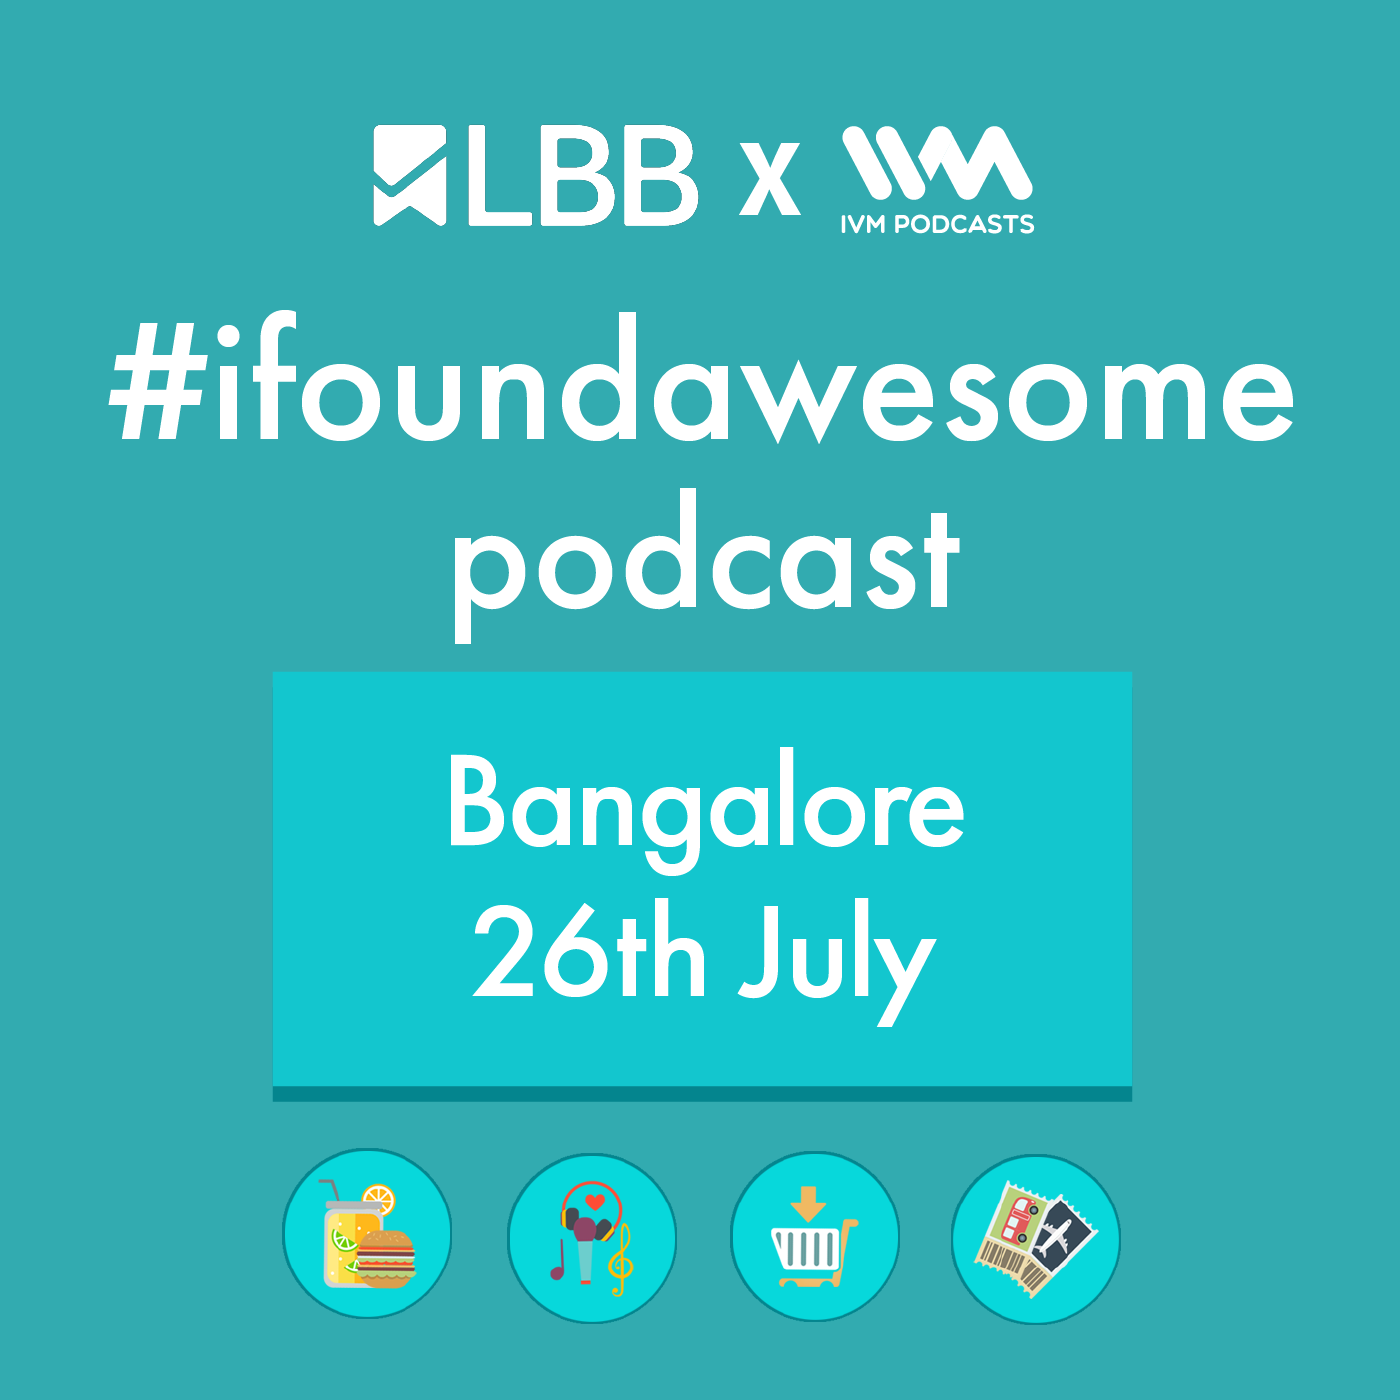 Bangalore 26th July